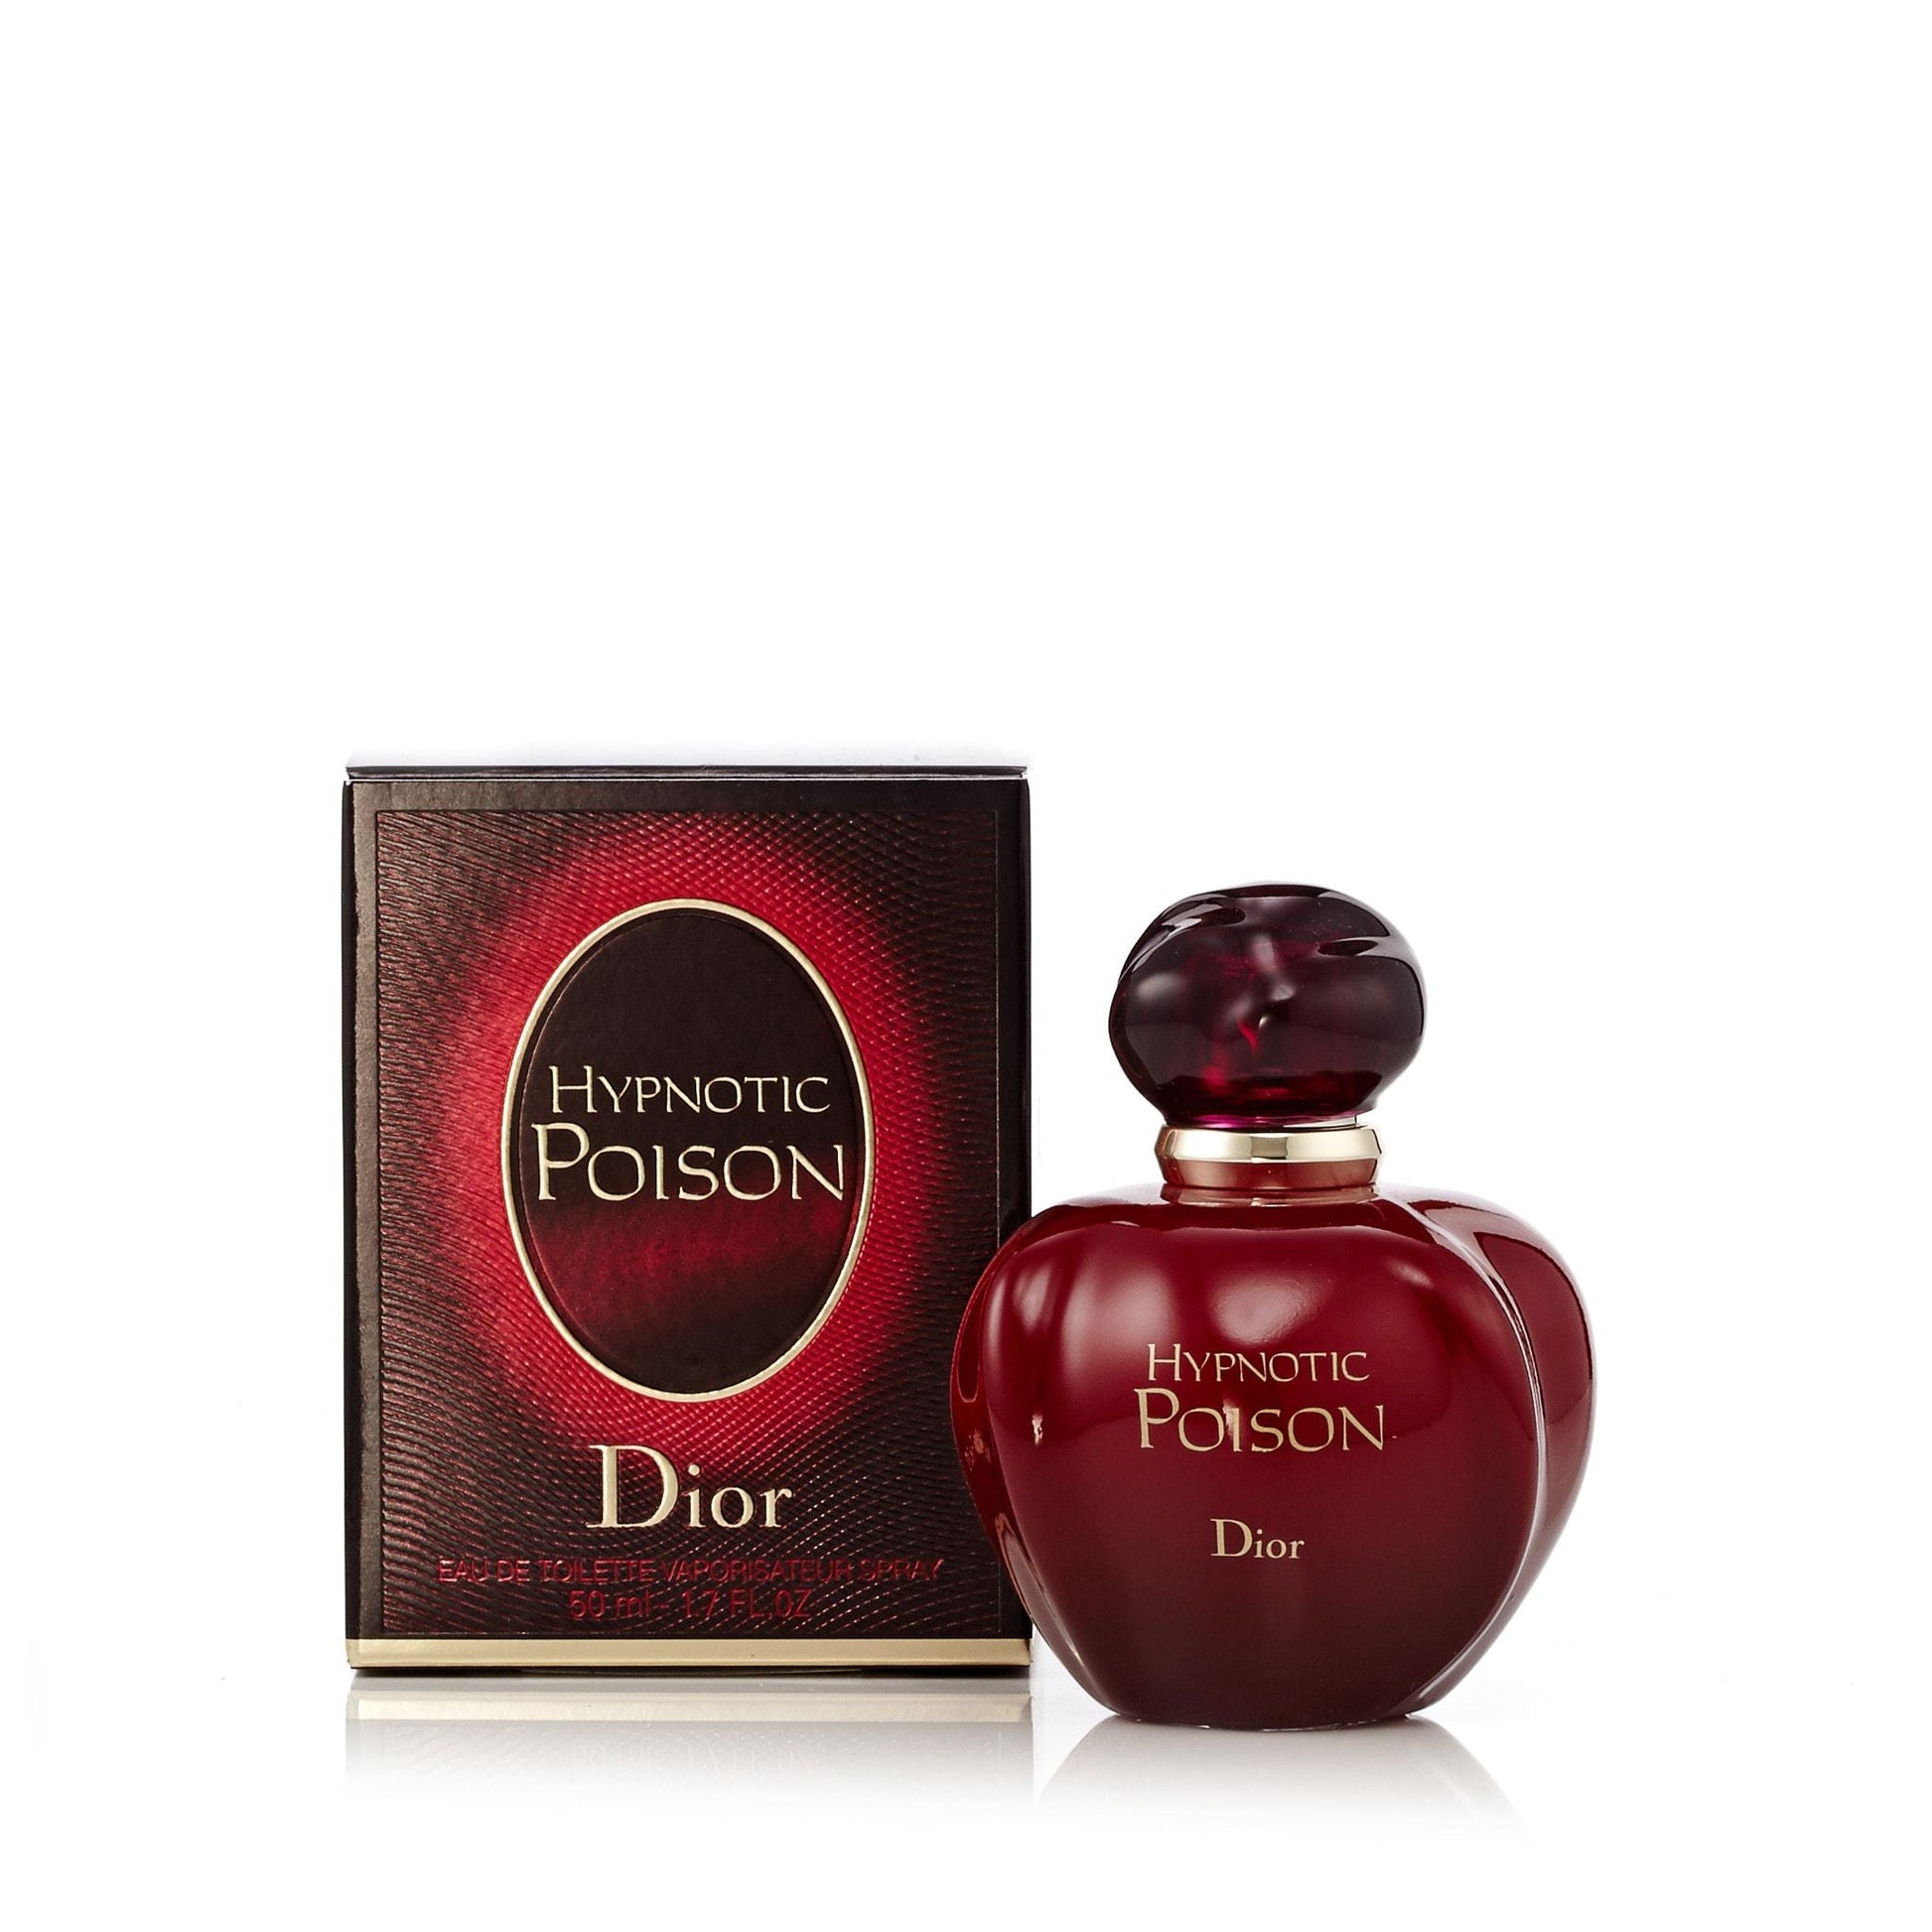  Christian Dior Eau de Toilette Spray, Hypnotic Poison Eau  Secrete, 3.4 Ounce. : Hypnotic Poison Perfume : Beauty & Personal Care